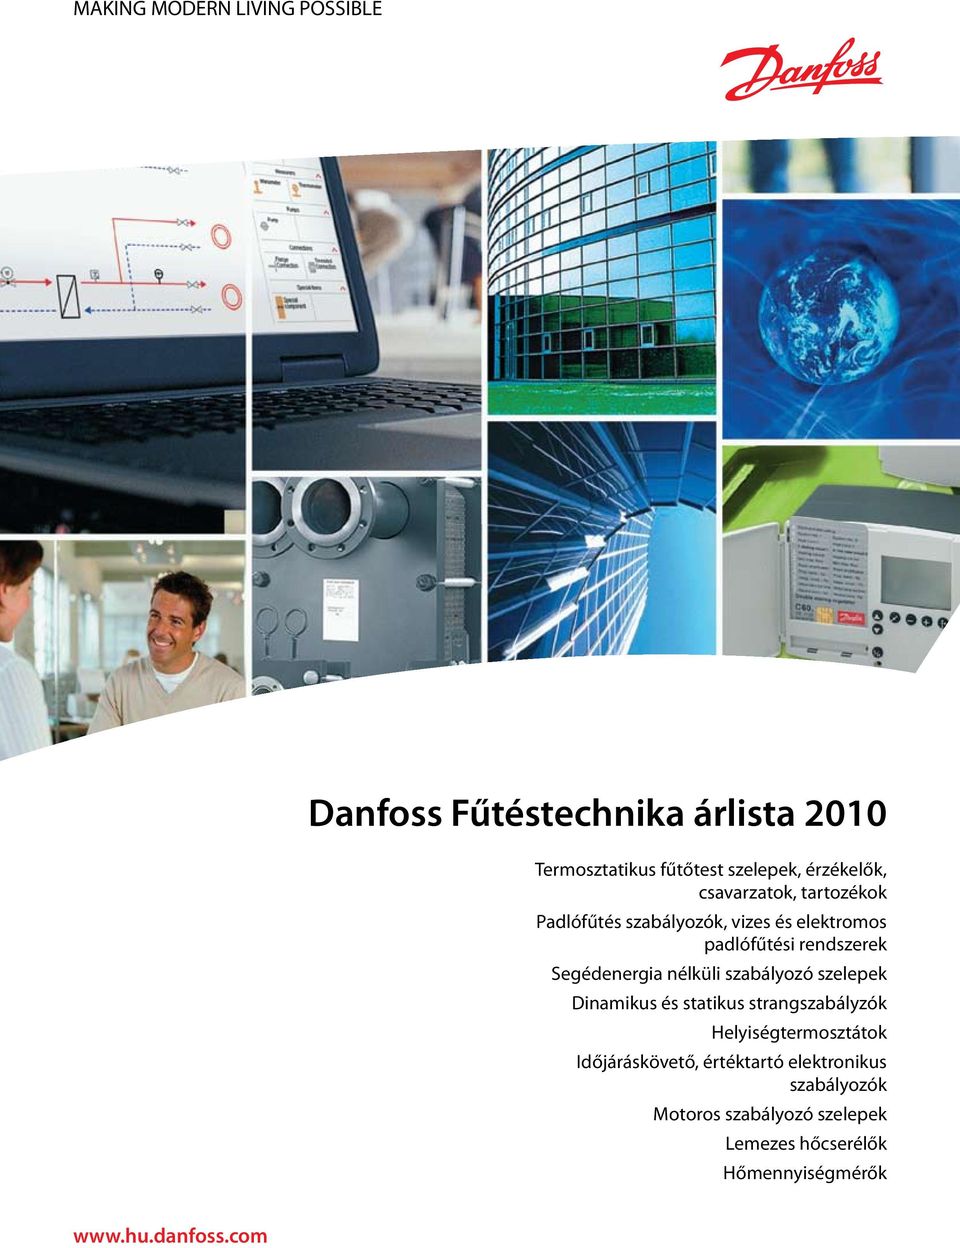 Danfoss Fűtéstechnika árlista 2010 MAKING MODERN LIVING POSSIBLE. - PDF  Ingyenes letöltés